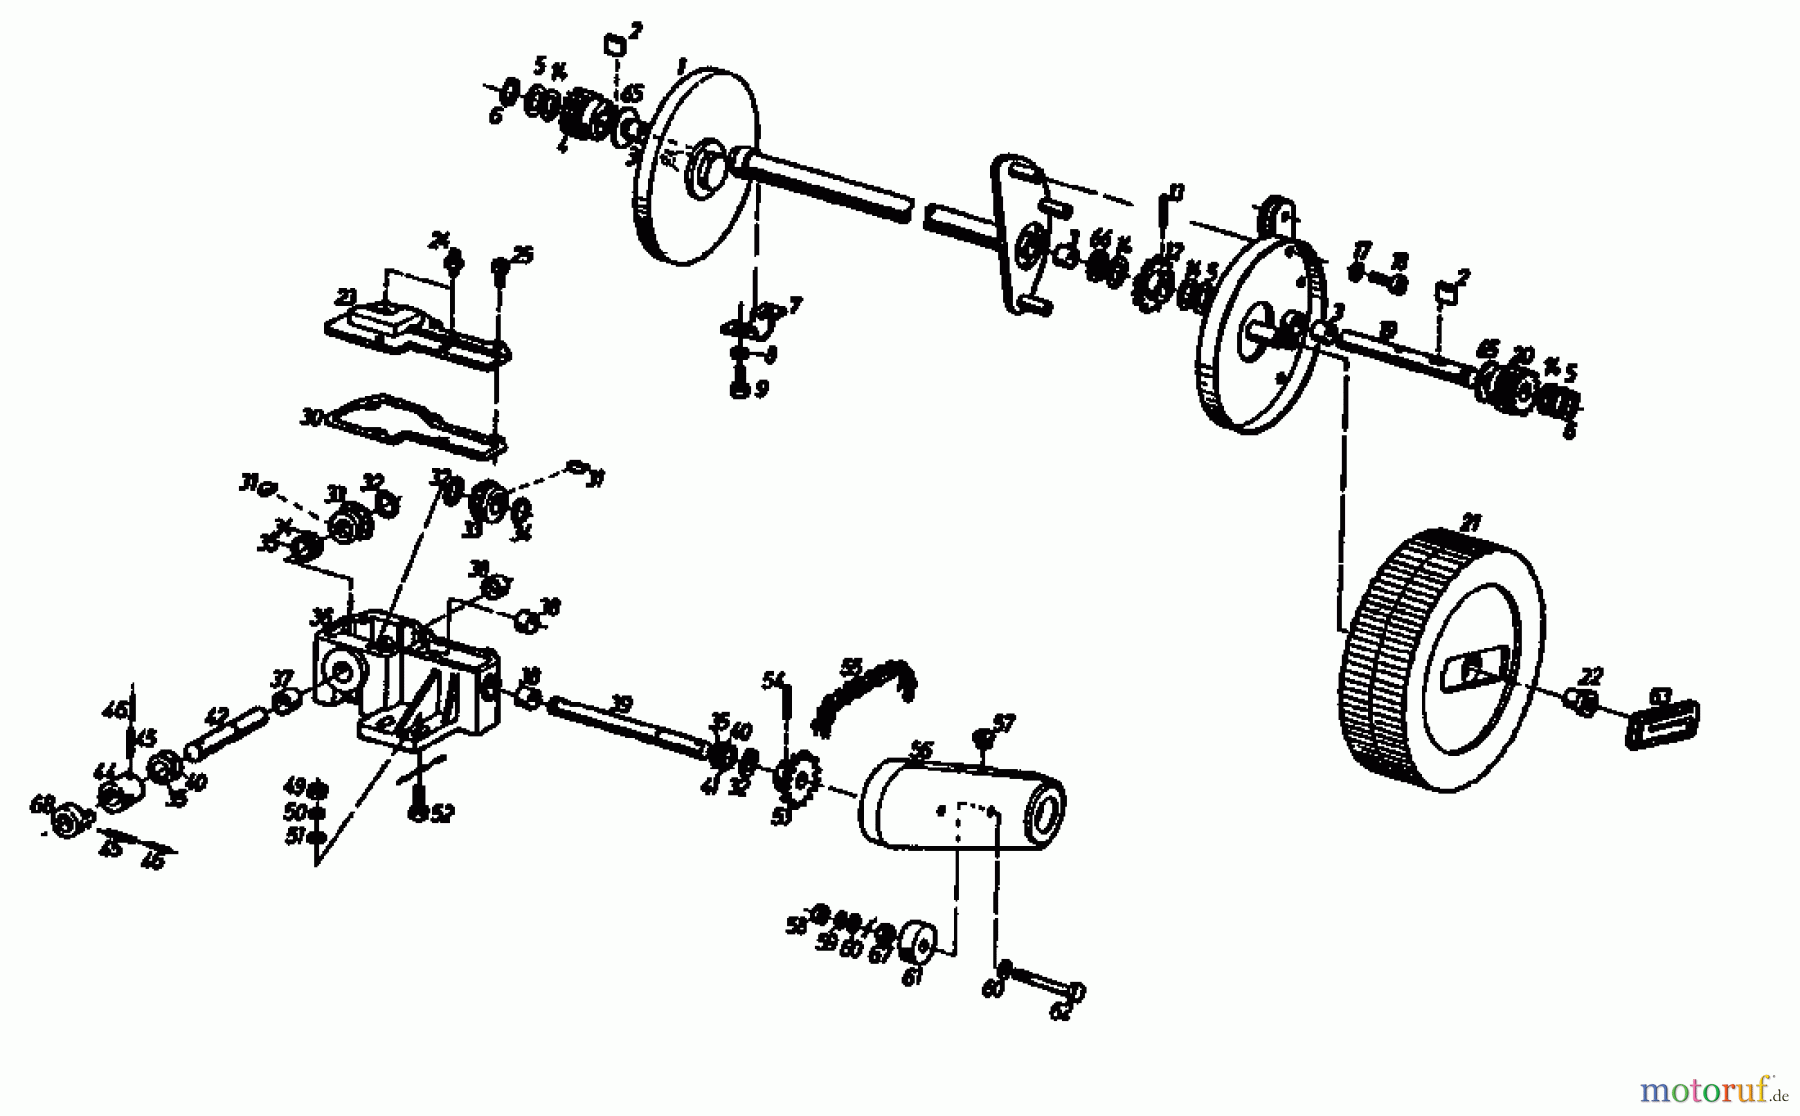  Gutbrod Motormäher mit Antrieb HB 45 R 02627.03  (1987) Getriebe, Räder